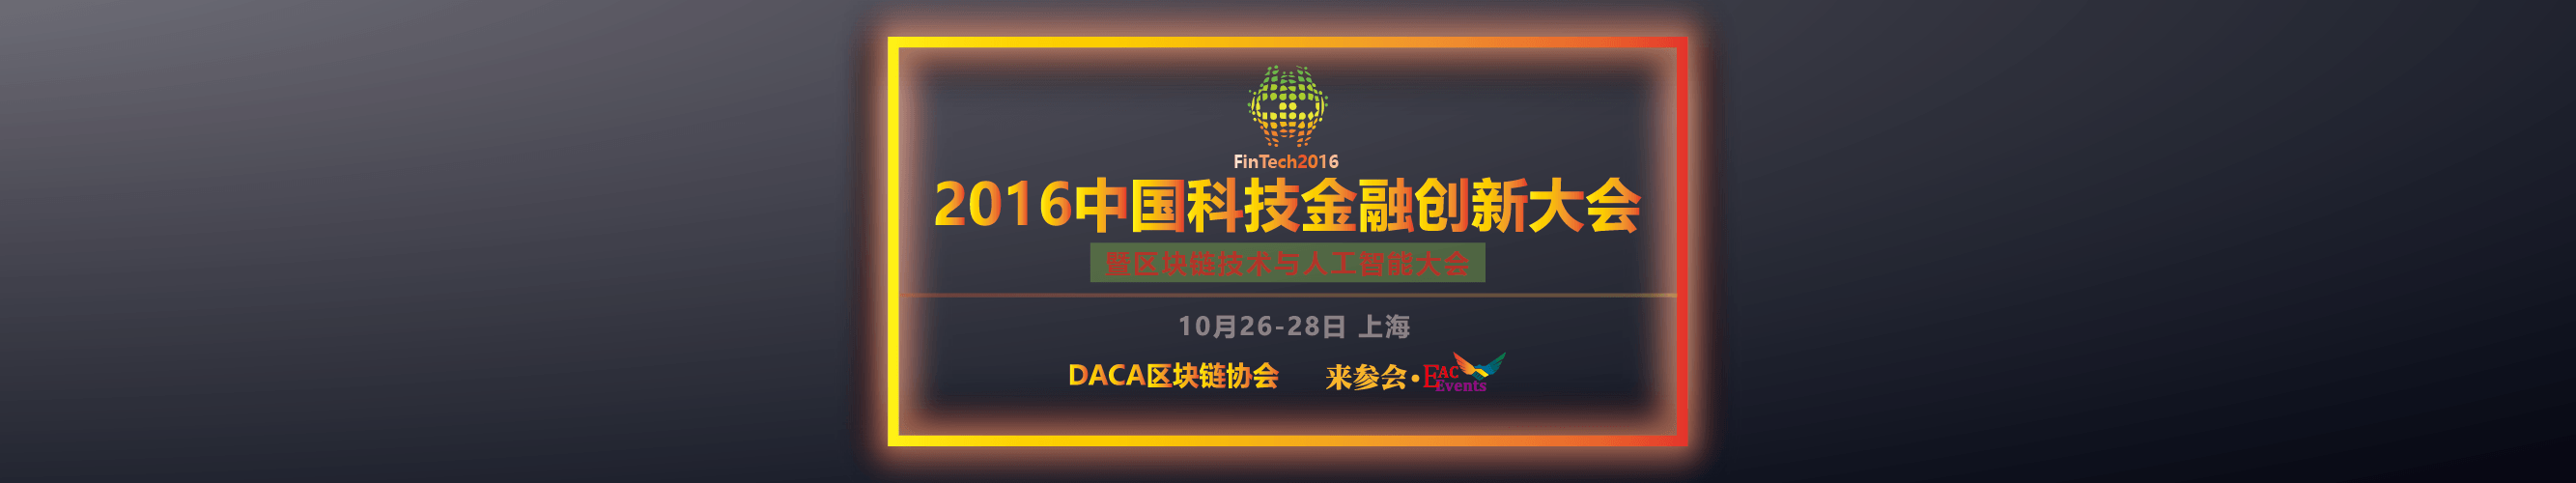 2016中国科技金融创新大会